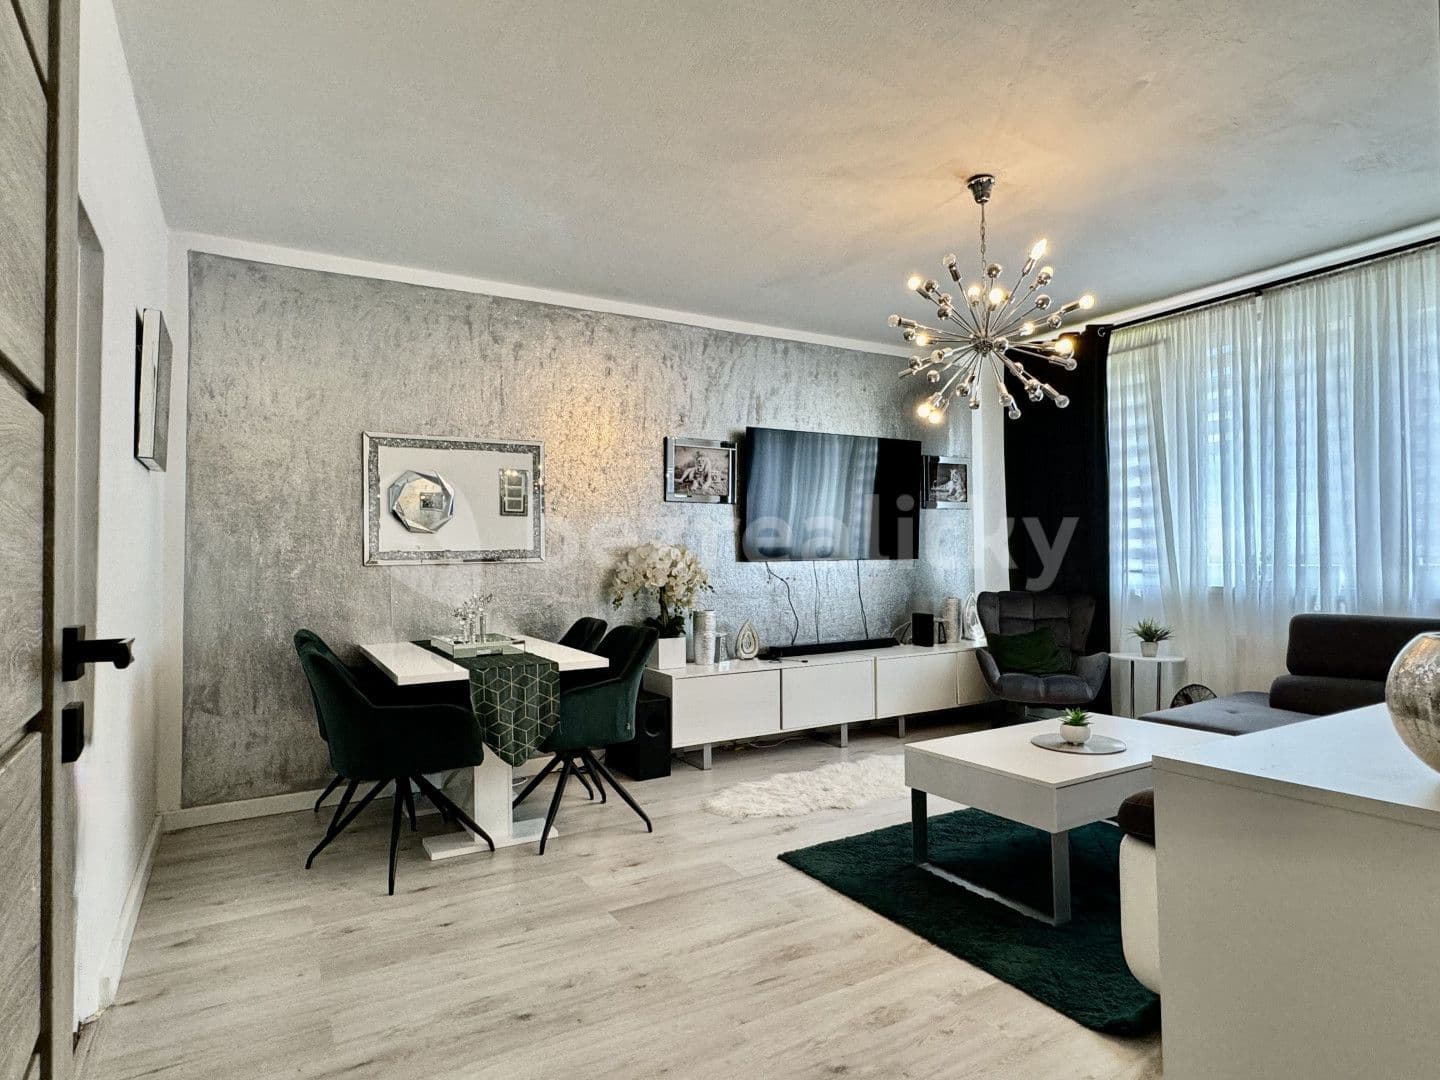 4 bedroom flat for sale, 79 m², Nákupní, Havířov, Moravskoslezský Region